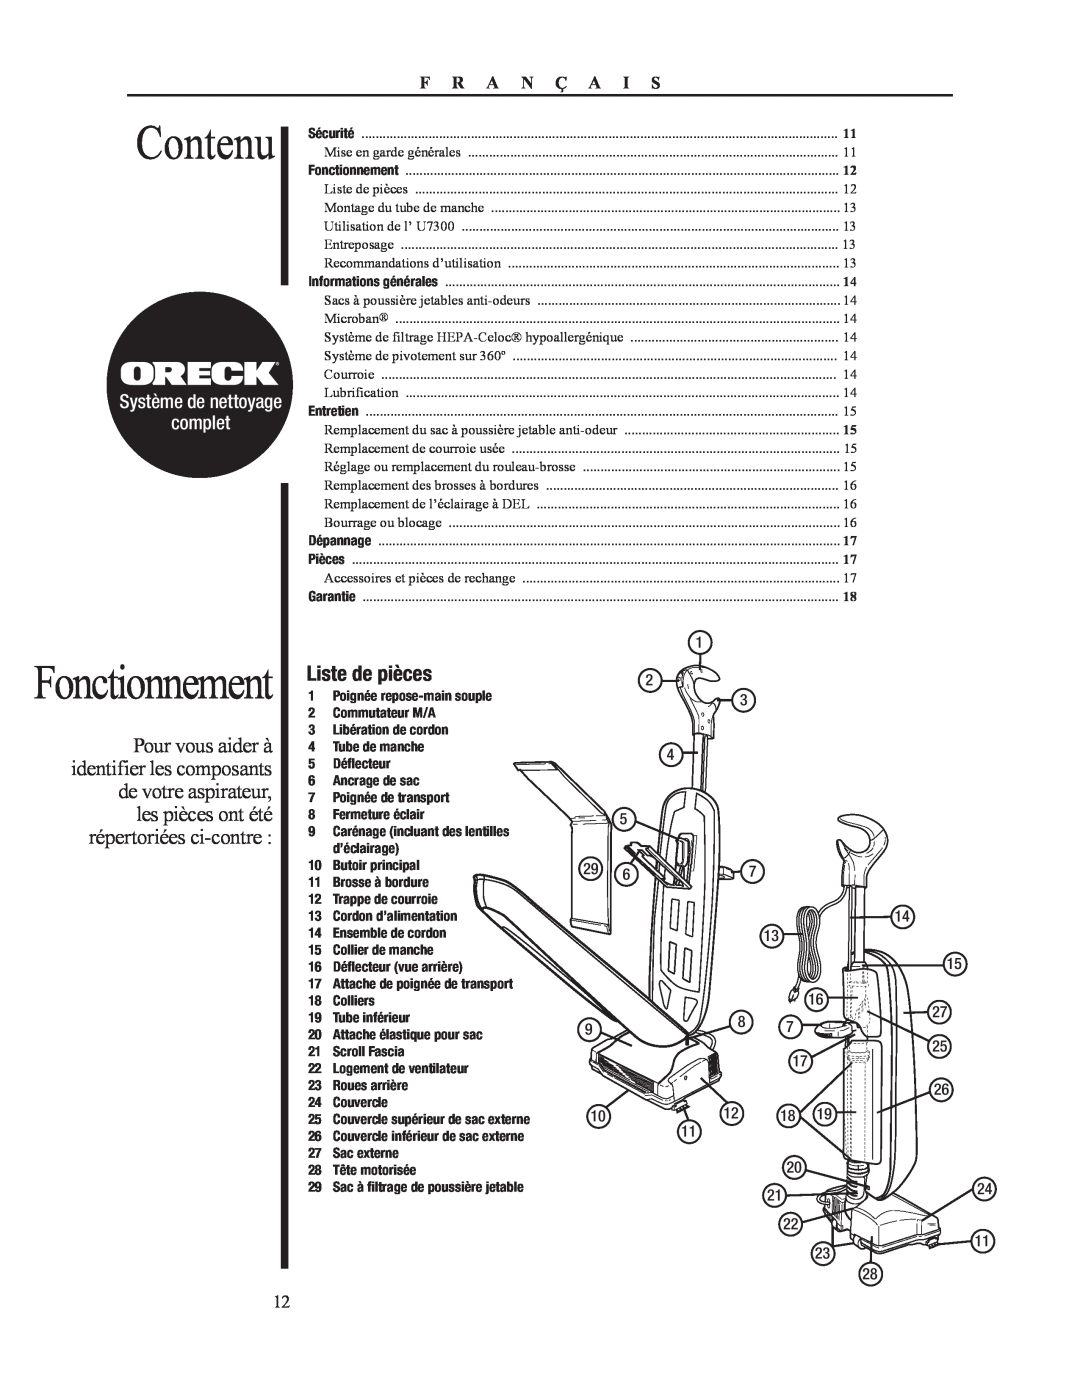 Oreck 79053-01REVA manual Contenu, Fonctionnement, Liste de pièces, complet, Système de nettoyage, F R A N Ç A I S 